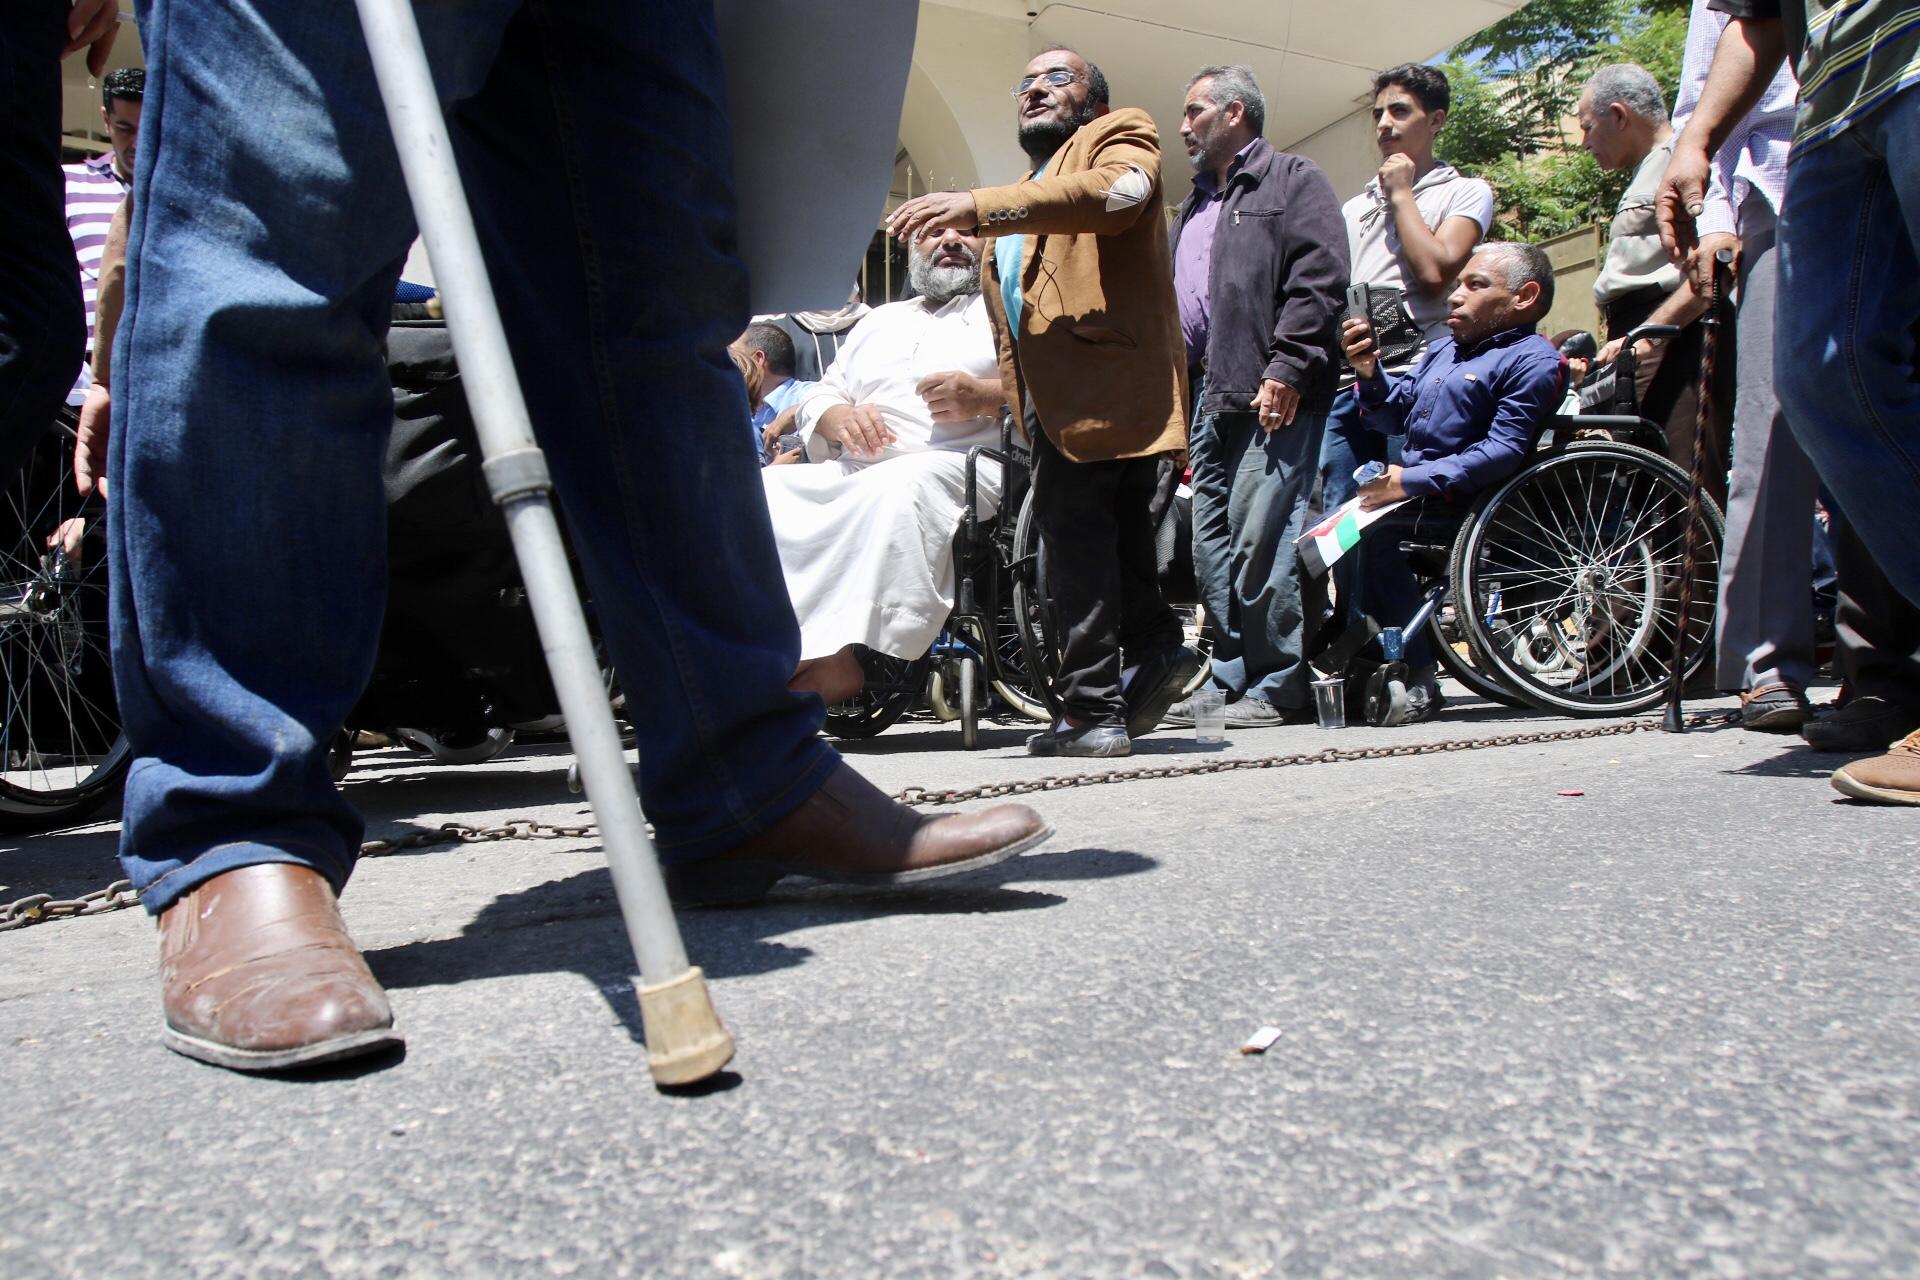 أشخاص من ذوي الإعاقة خلال وقفة احتجاجية أمام وزارة المالية. صلاح ملكاوي/ المملكة 